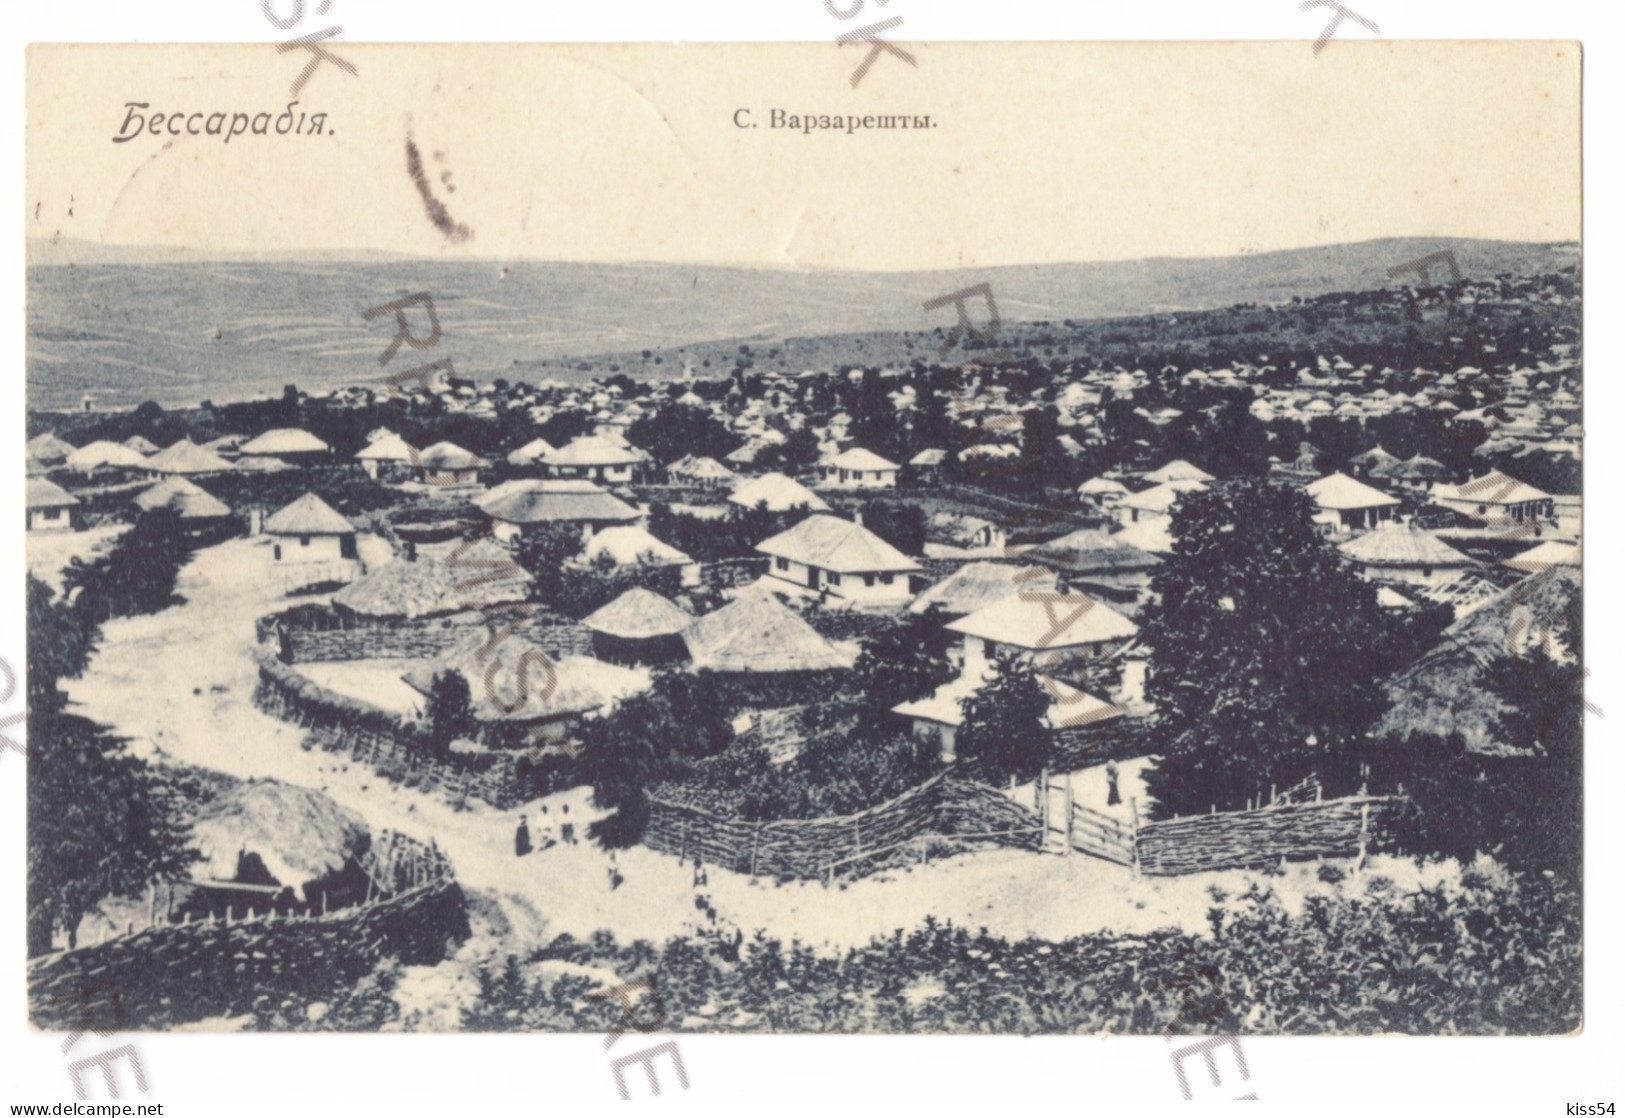 MOL 3 - 19690 MOLDOVA, Bassarabia, Panorama - Old Postcard - Used - 1905 - Moldawien (Moldova)